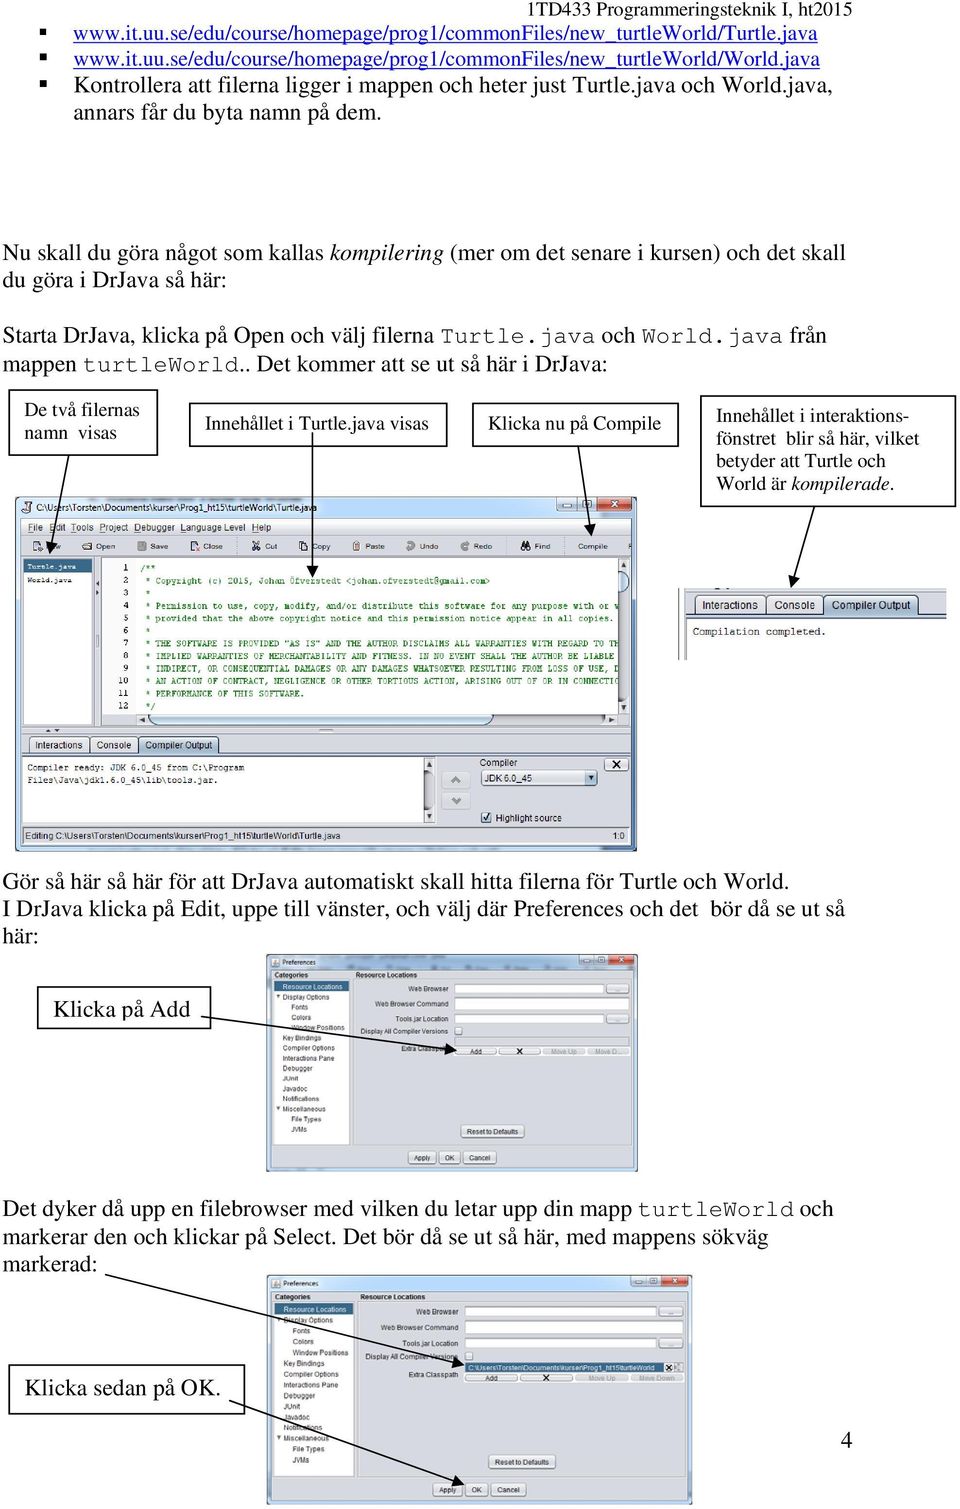 Nu skall du göra något som kallas kompilering (mer om det senare i kursen) och det skall du göra i DrJava så här: Starta DrJava, klicka på Open och välj filerna Turtle.java och World.